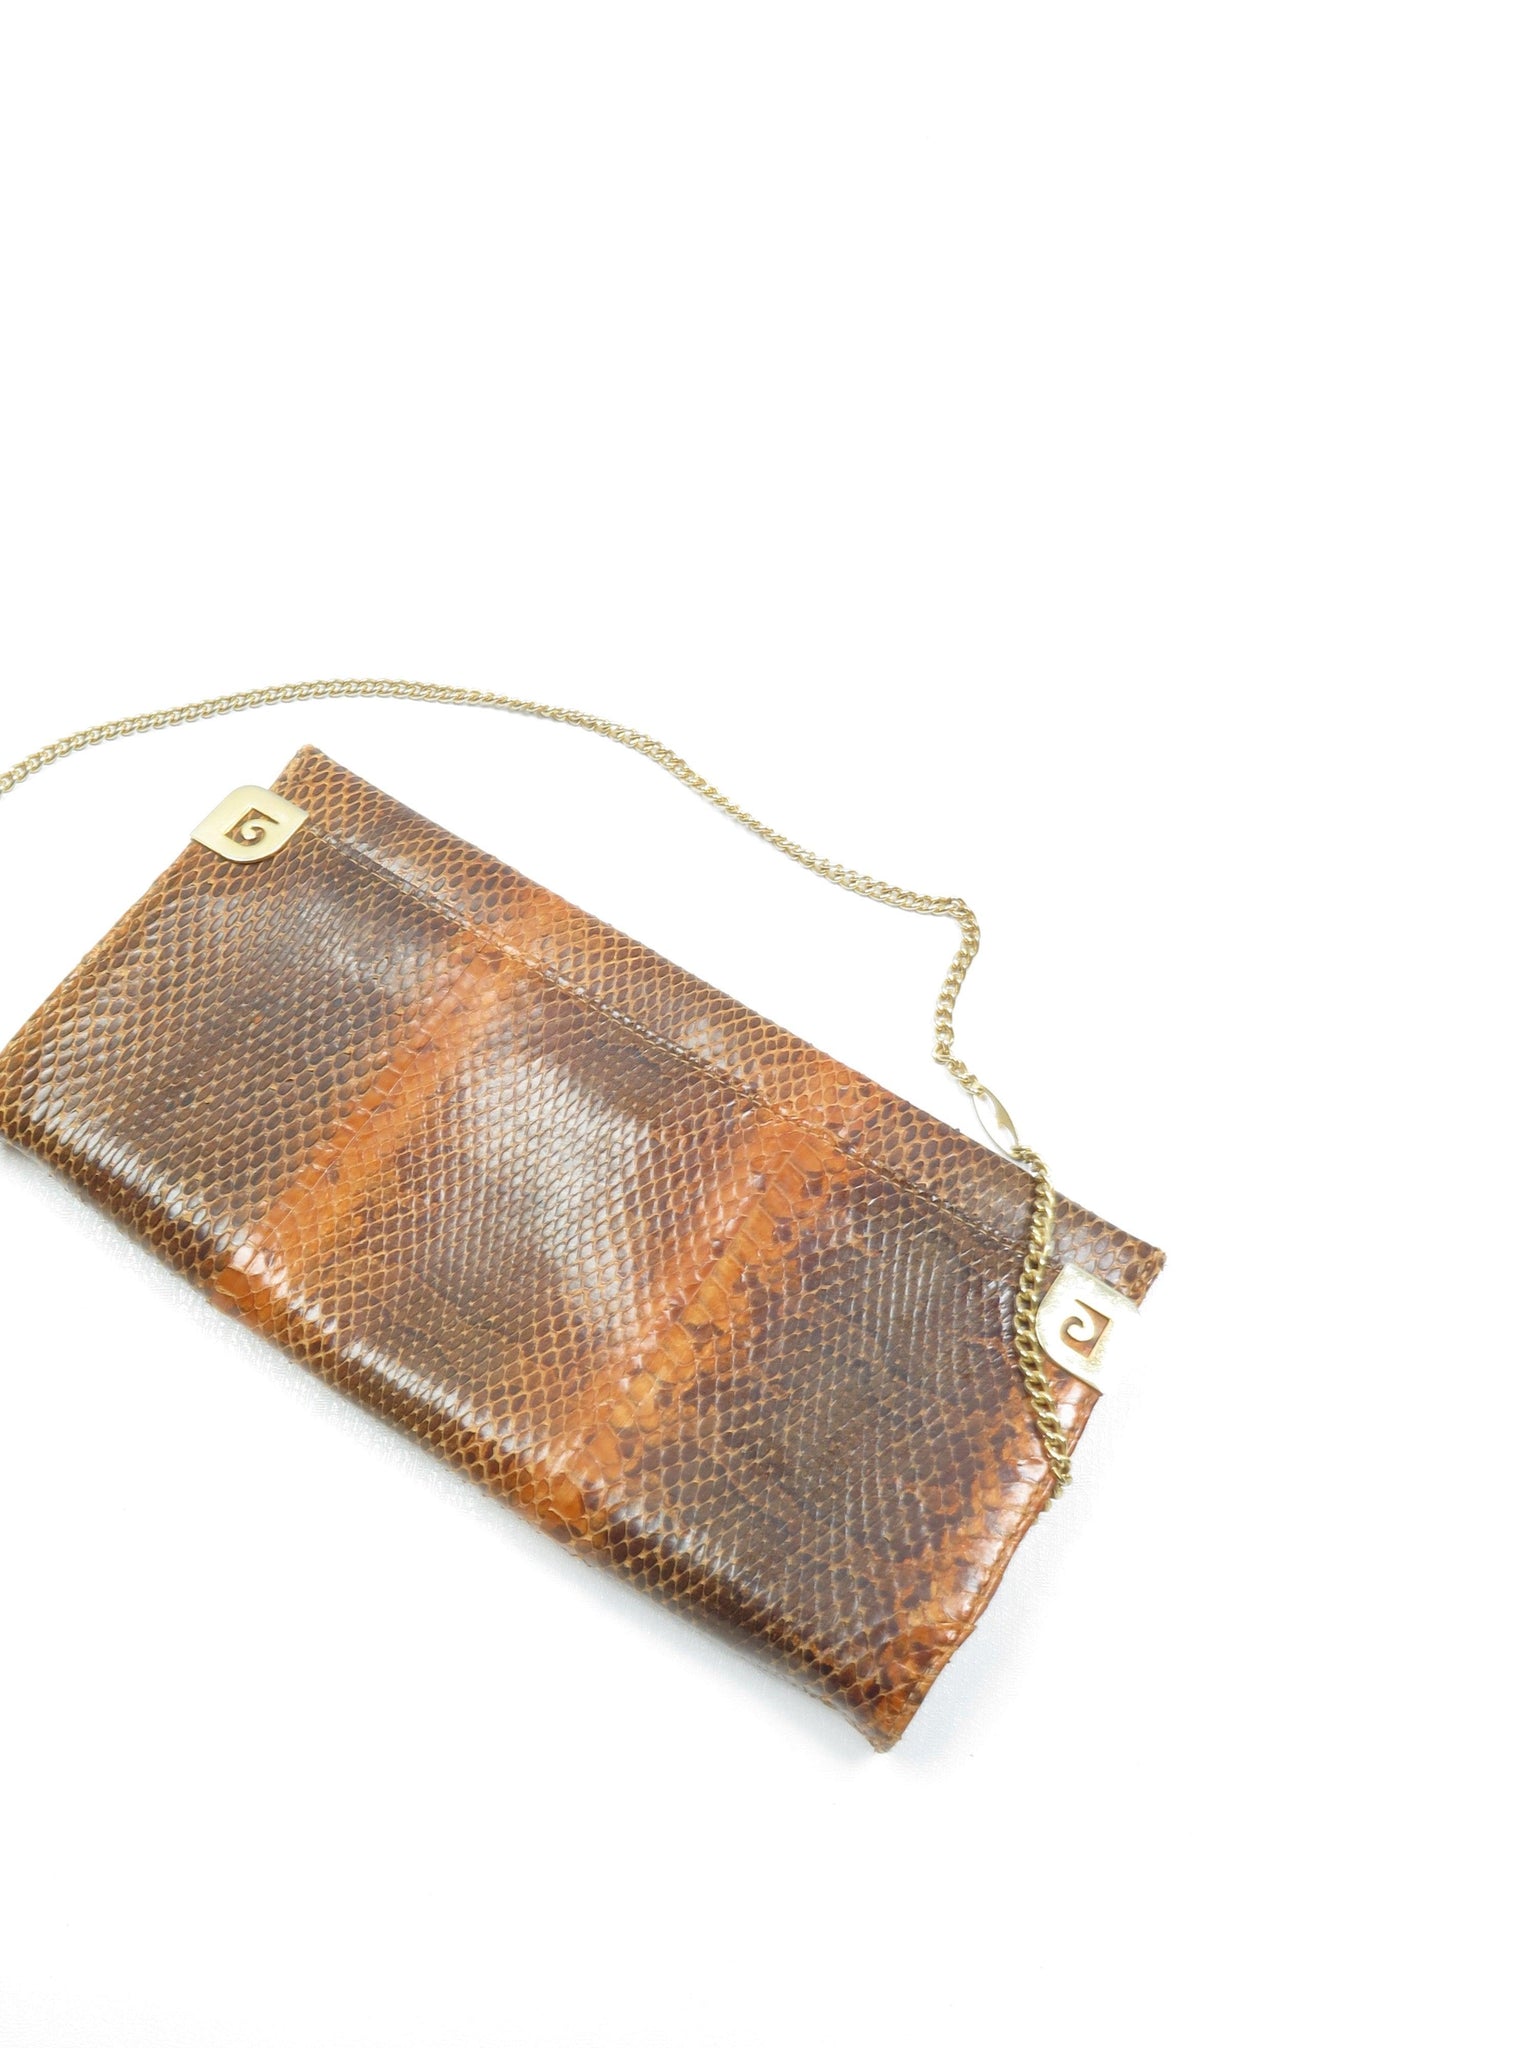 Tan Snakeskin Envelope Shoulder  Bag - The Harlequin